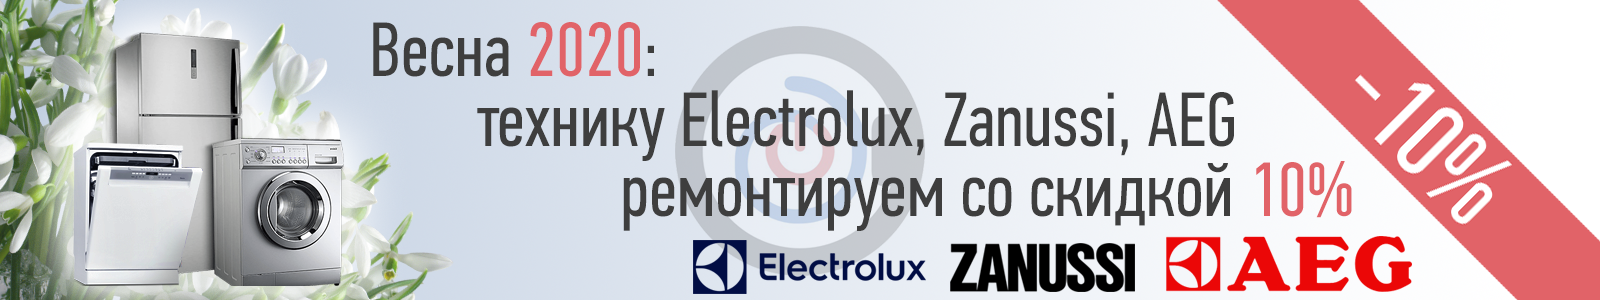 Акция весна 2020: ремонт техники Electrolux, Zanussi, AEG со скидкой 10%